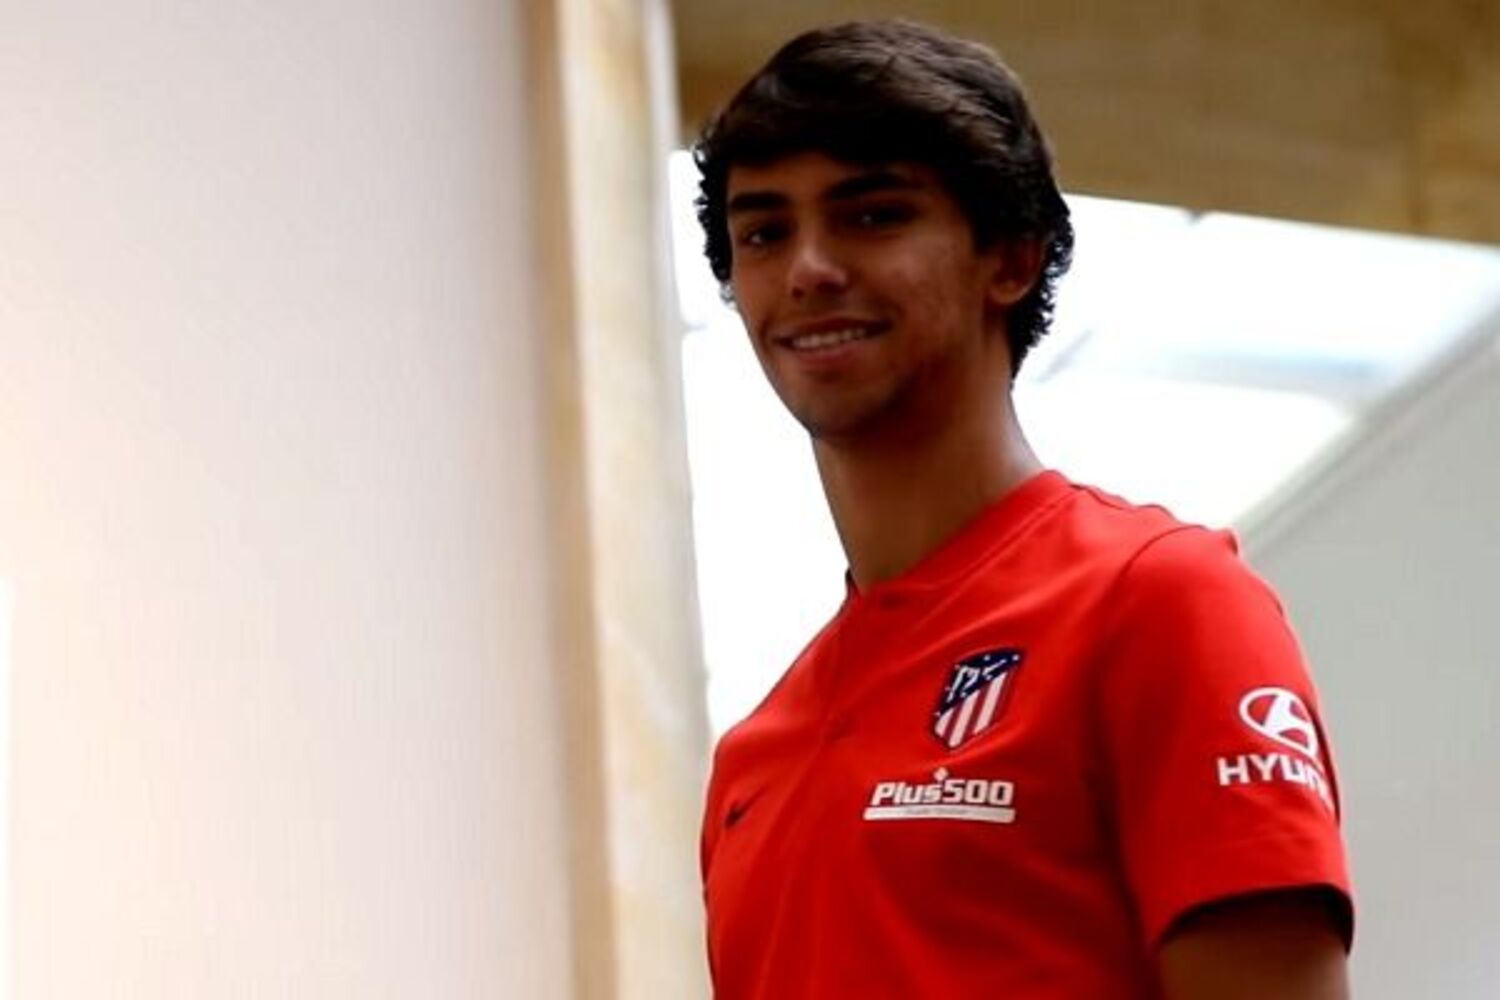 OFICJALNIE: João Félix w Atlético Madryt. Wielki transfer stał się faktem!